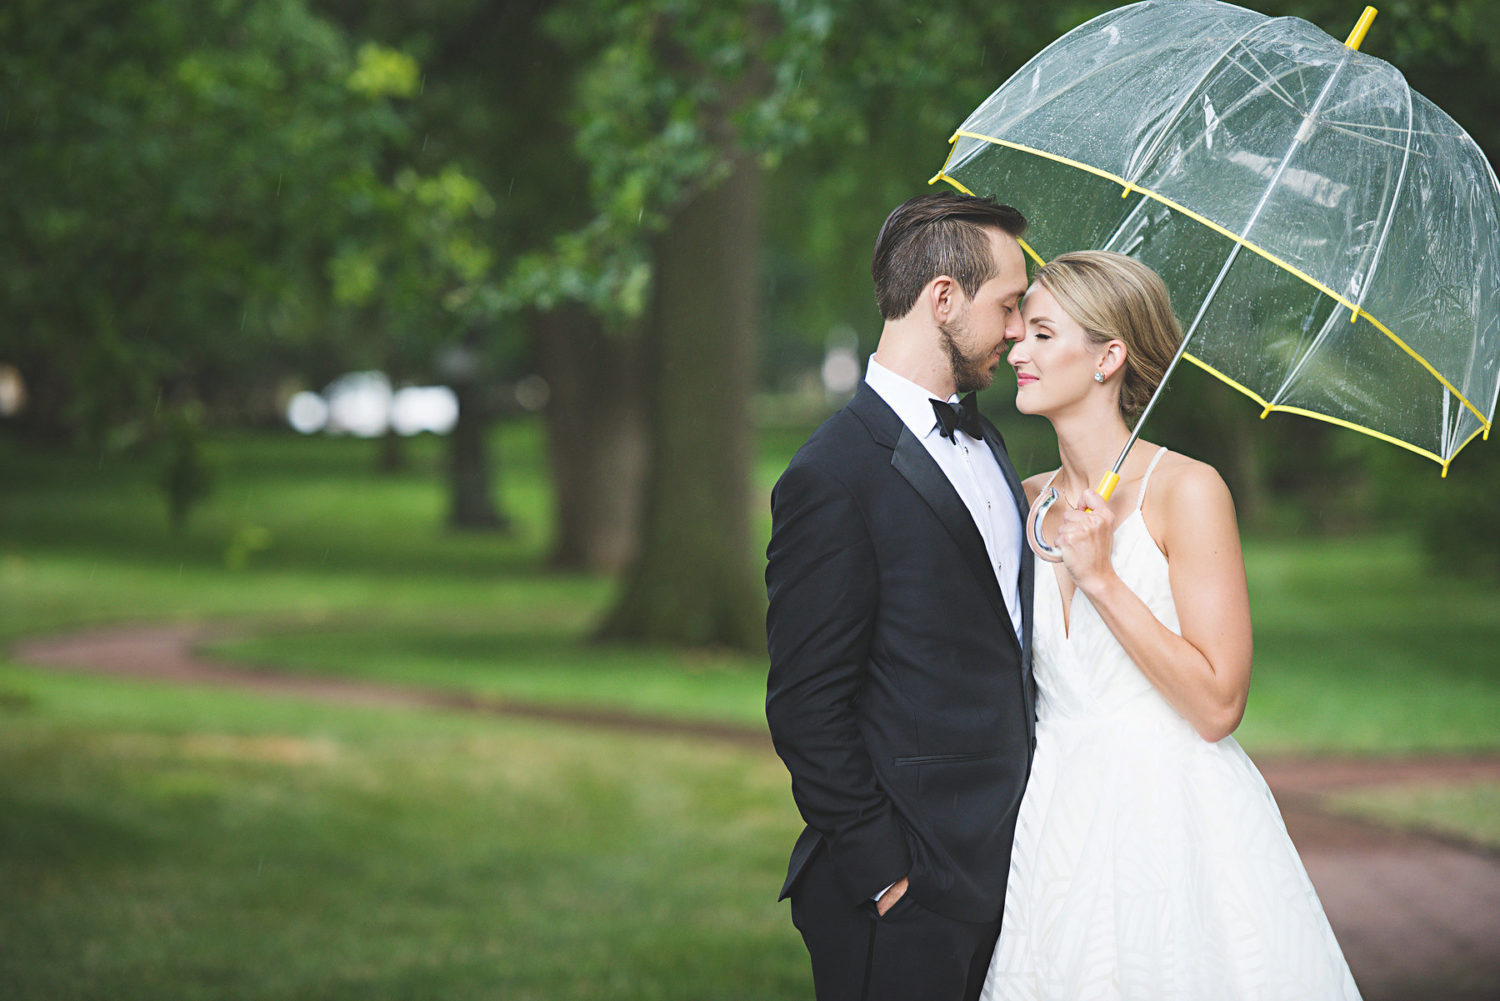 umbrella wedding pictures